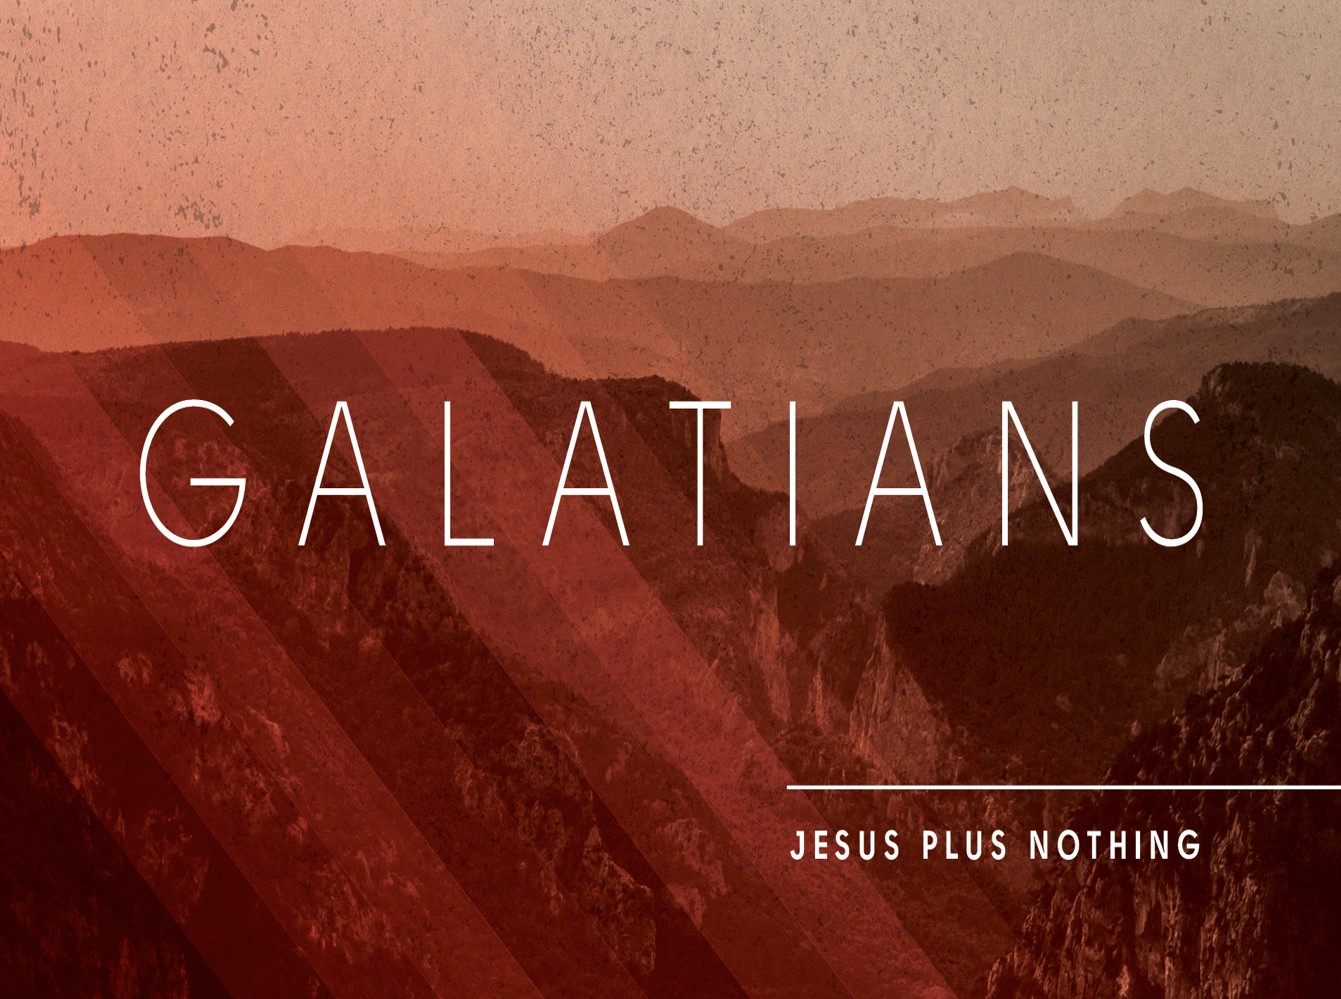 Galatians 3:10-14